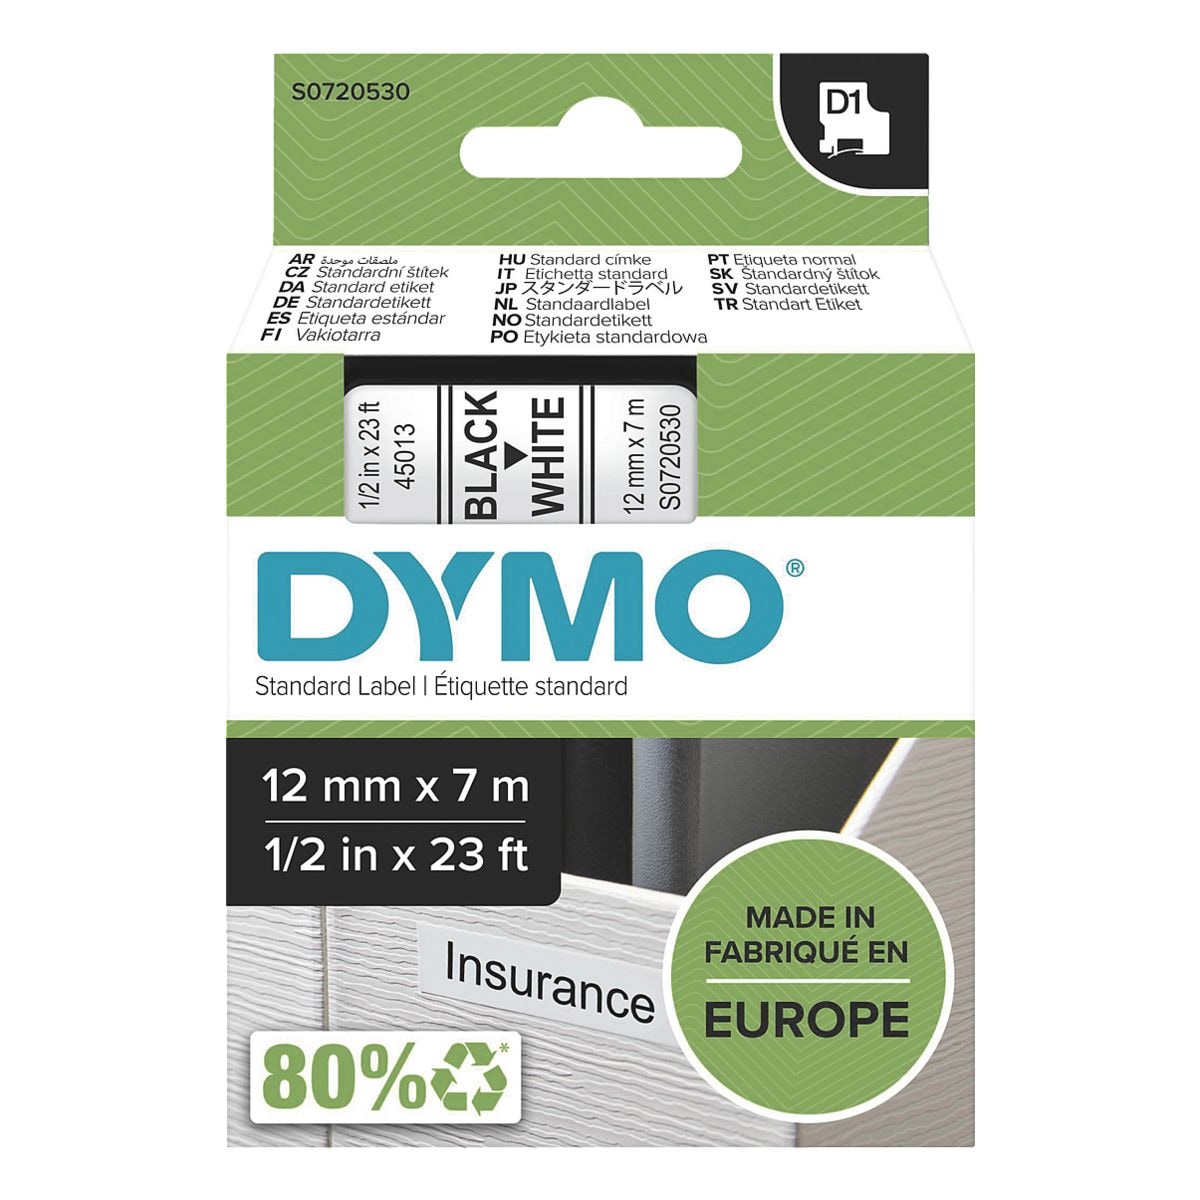 Dymo ruban pour titreuse 12 mm x 7 m pour titreuse Dymo D1